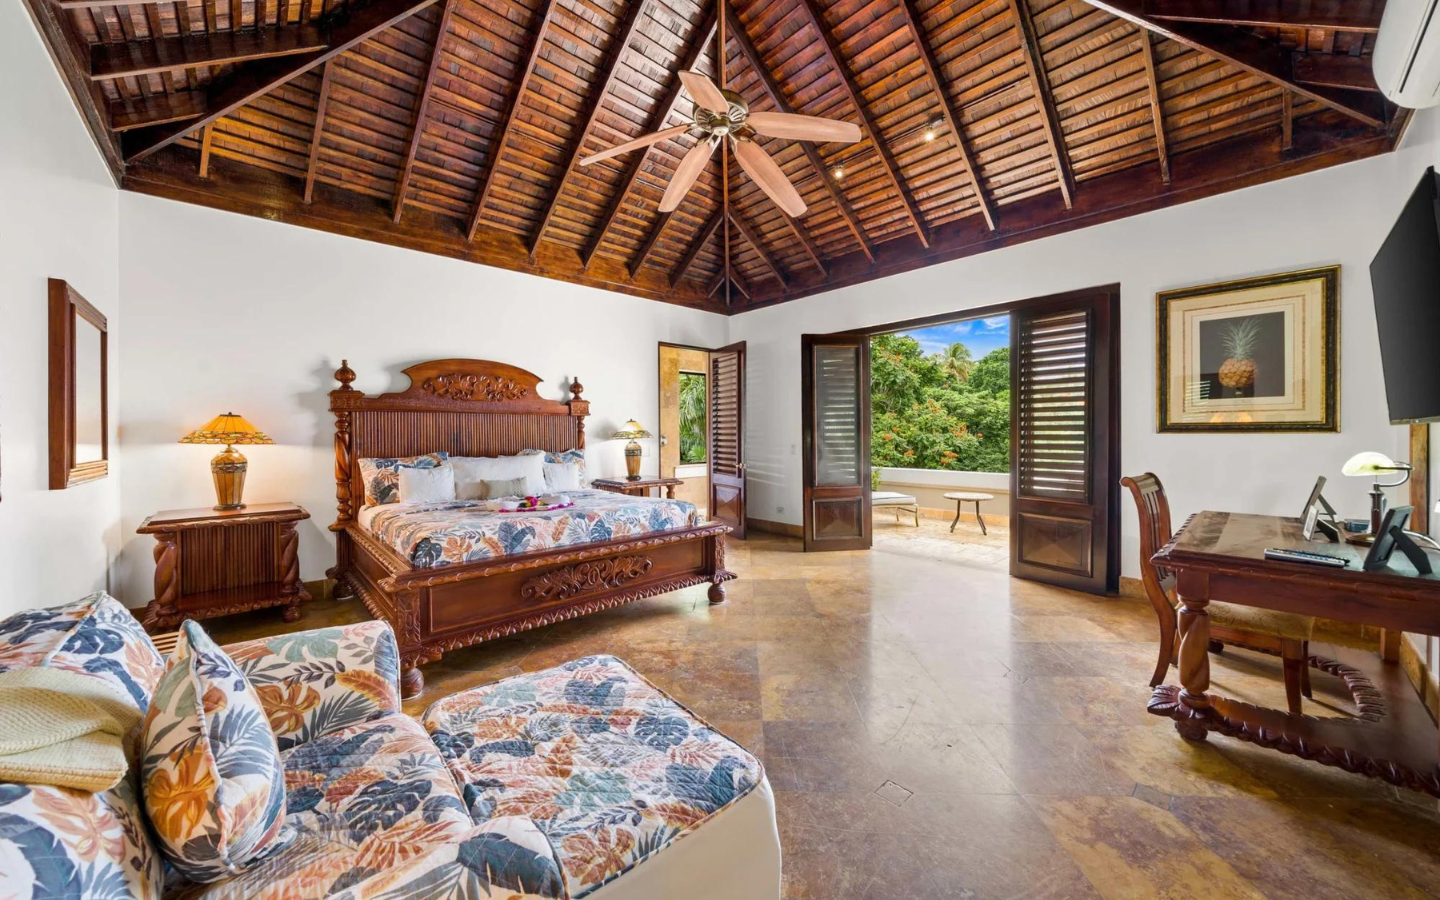 Jamaïque | Villa de luxe à vendre | Immobilier de luxe